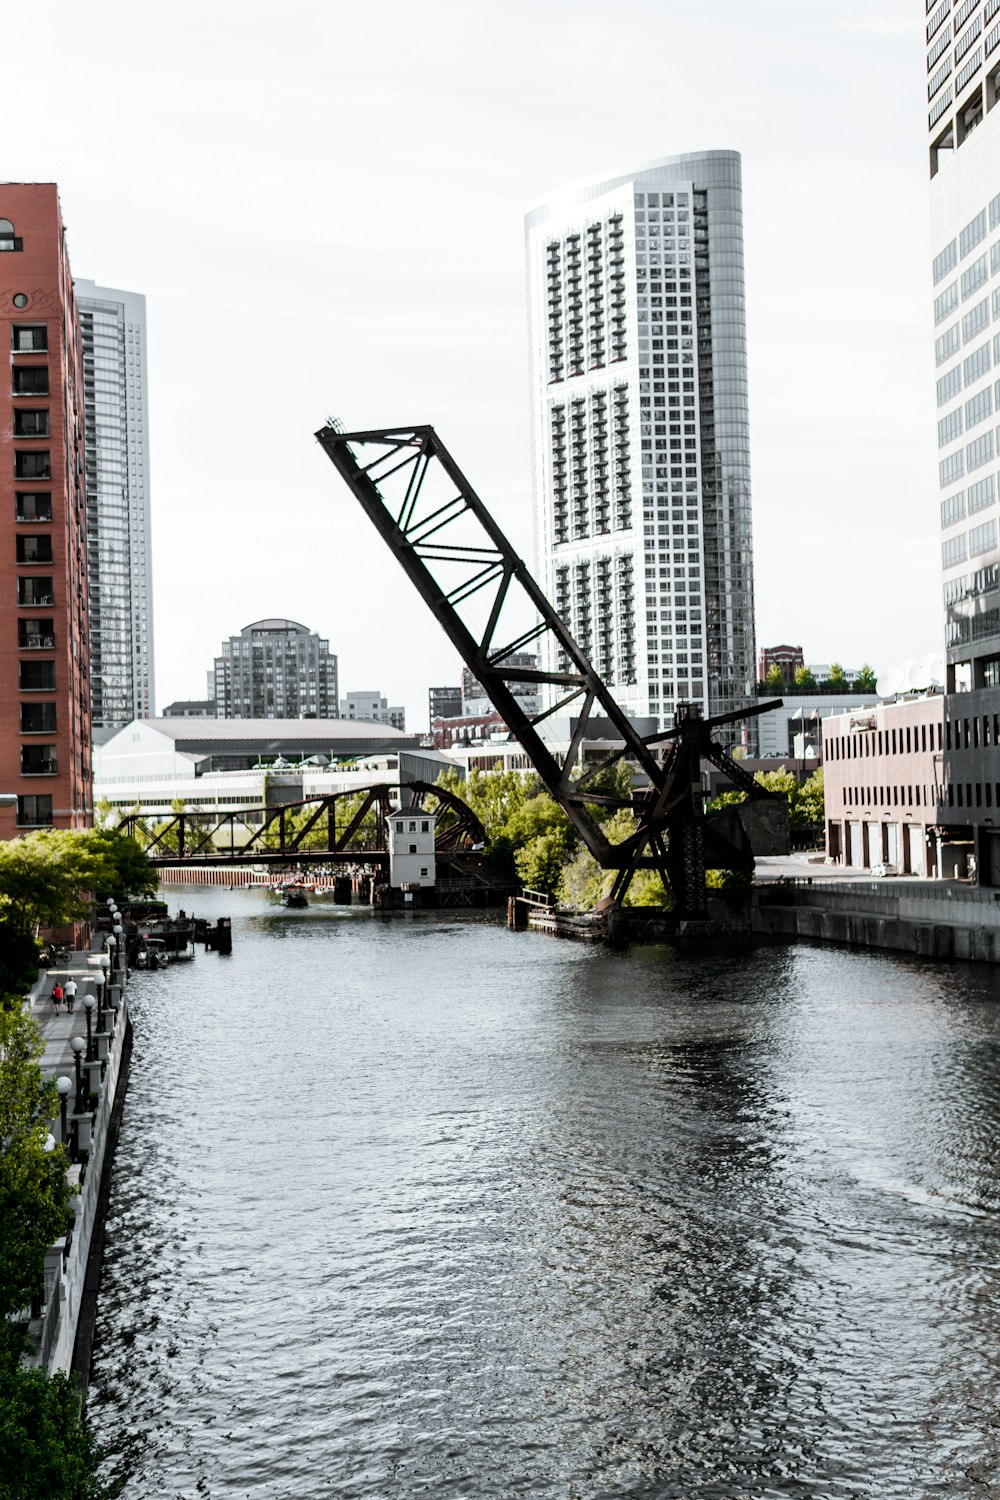 Pont transversal en métal noir sur la rivière pendant la journée